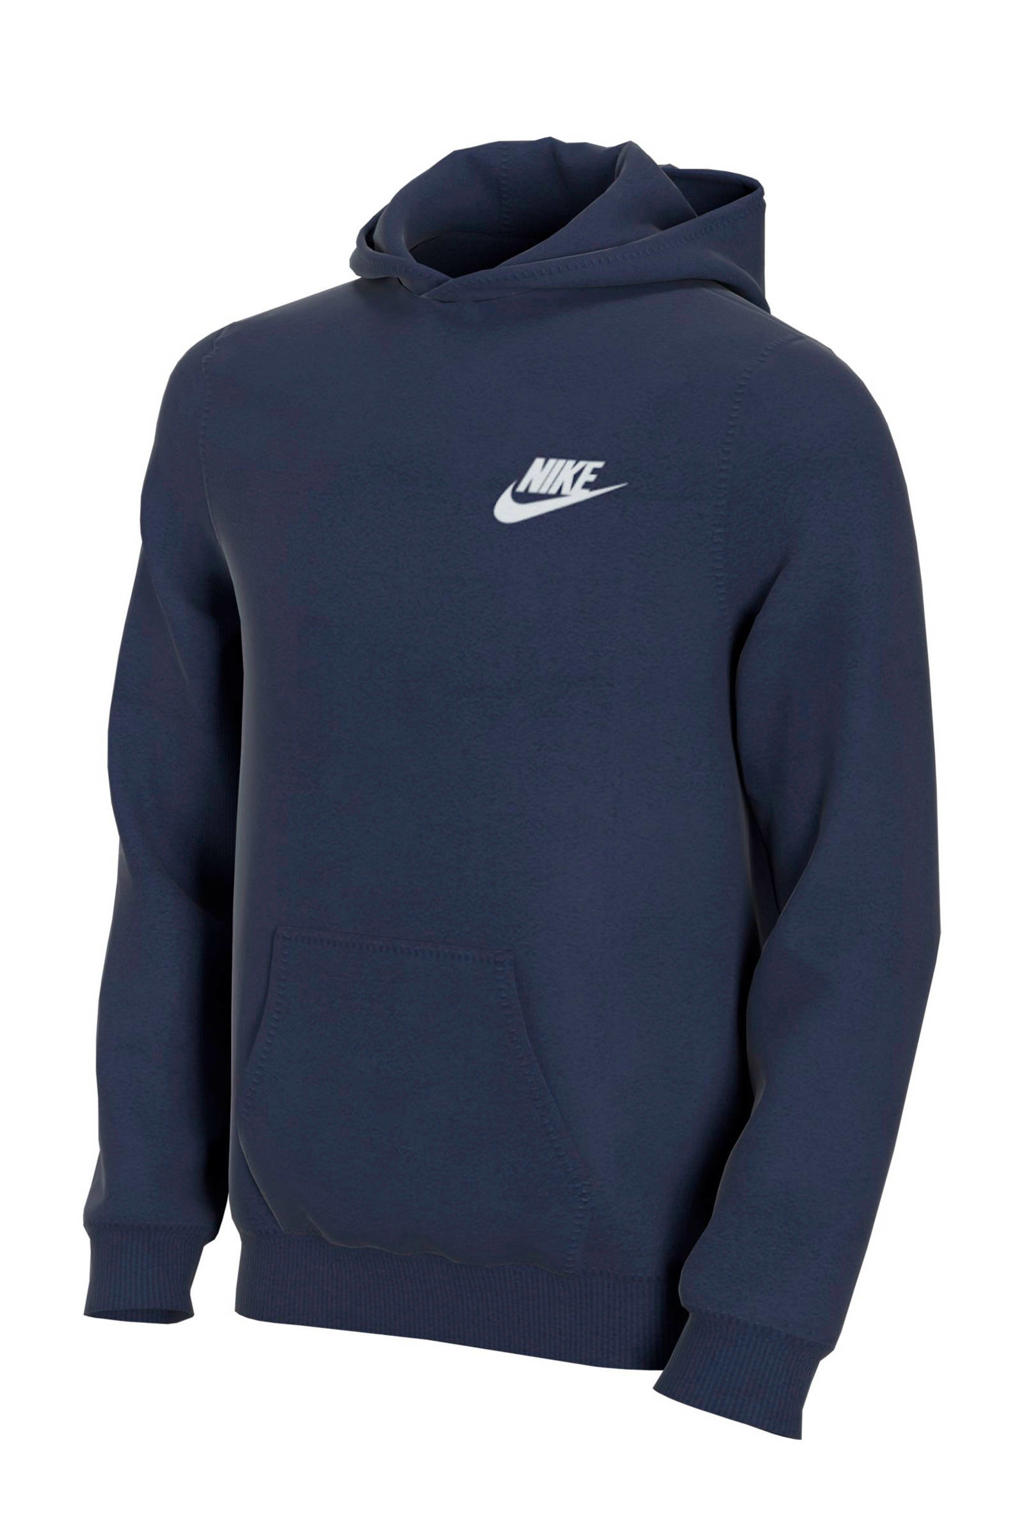 Donkerblauw en witte jongens Nike hoodie van sweat materiaal met logo dessin, lange mouwen en capuchon